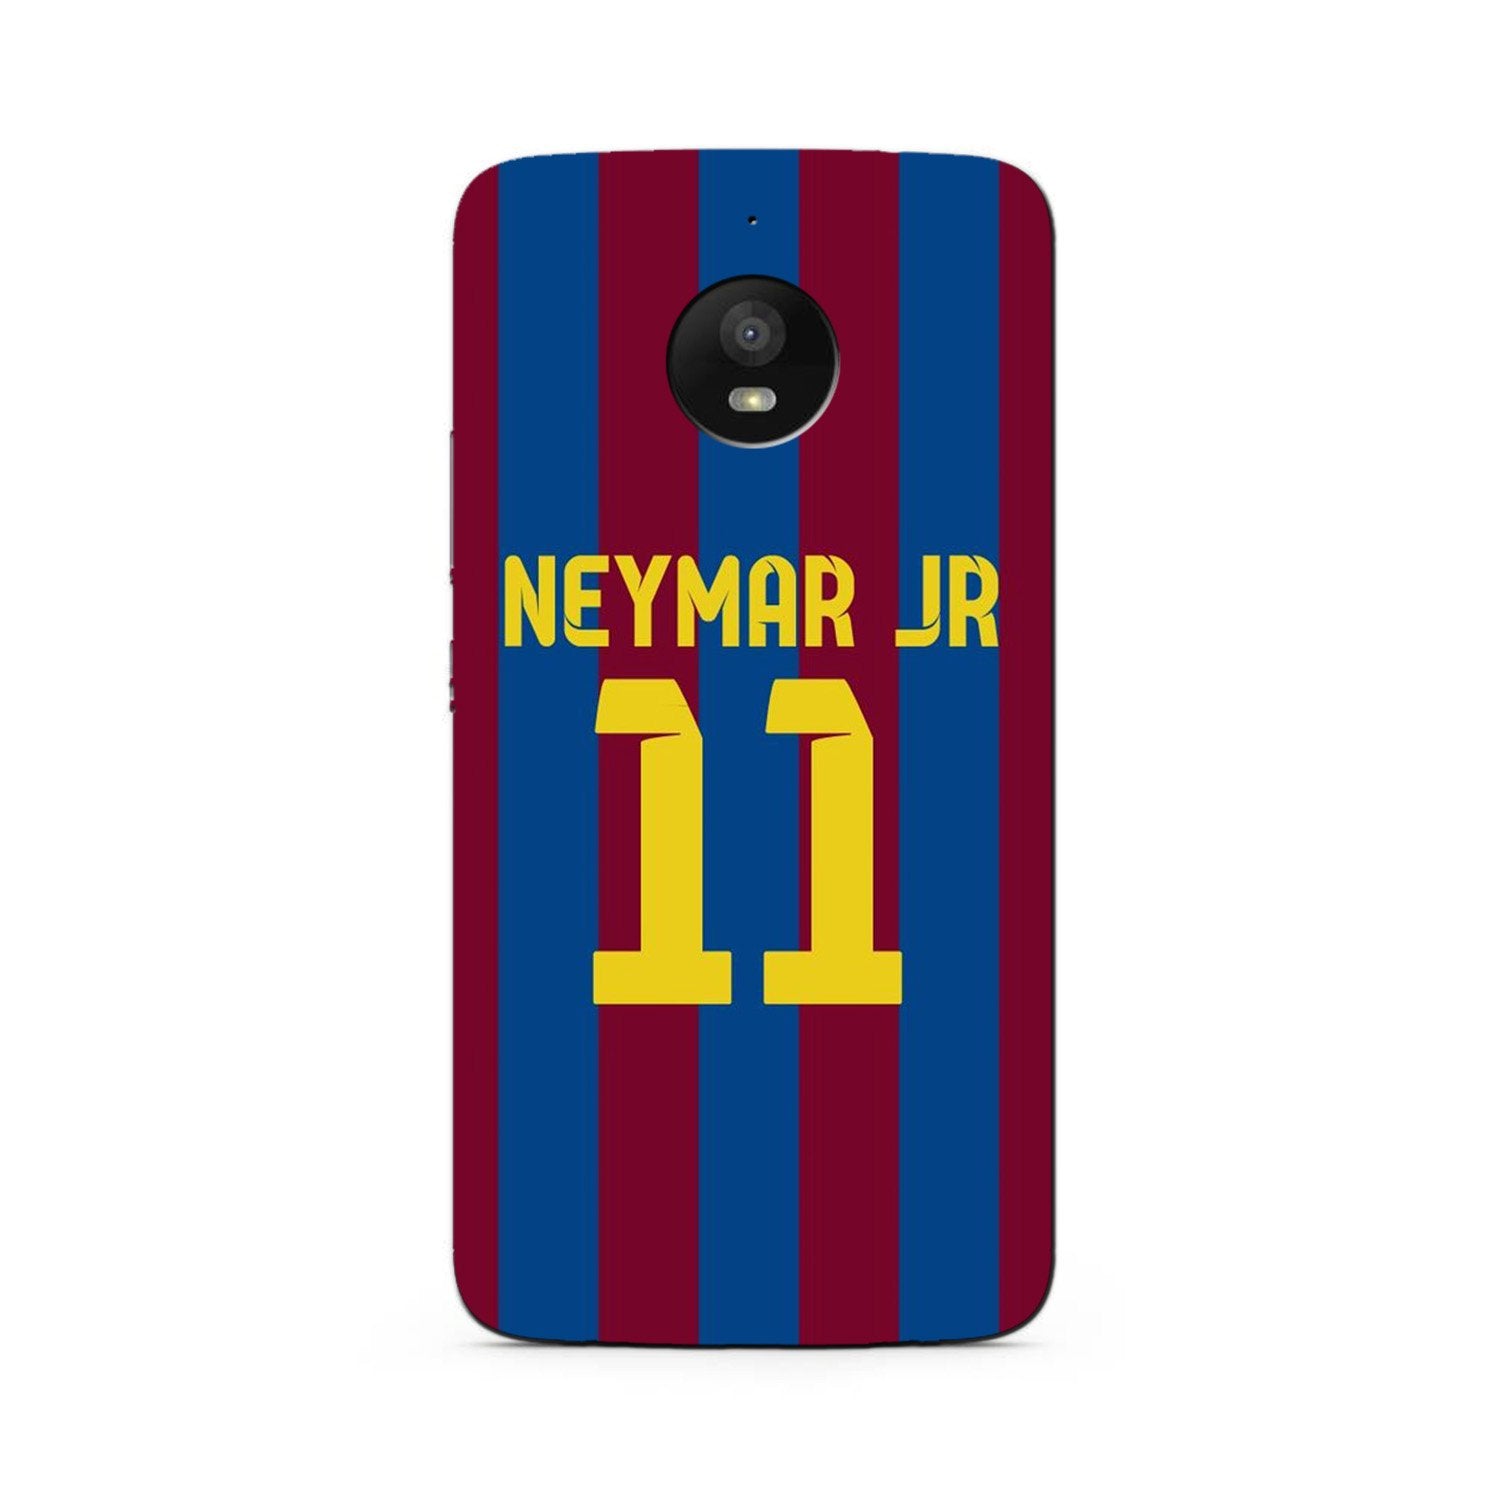 Neymar Jr Case for Moto E4 Plus(Design - 162)